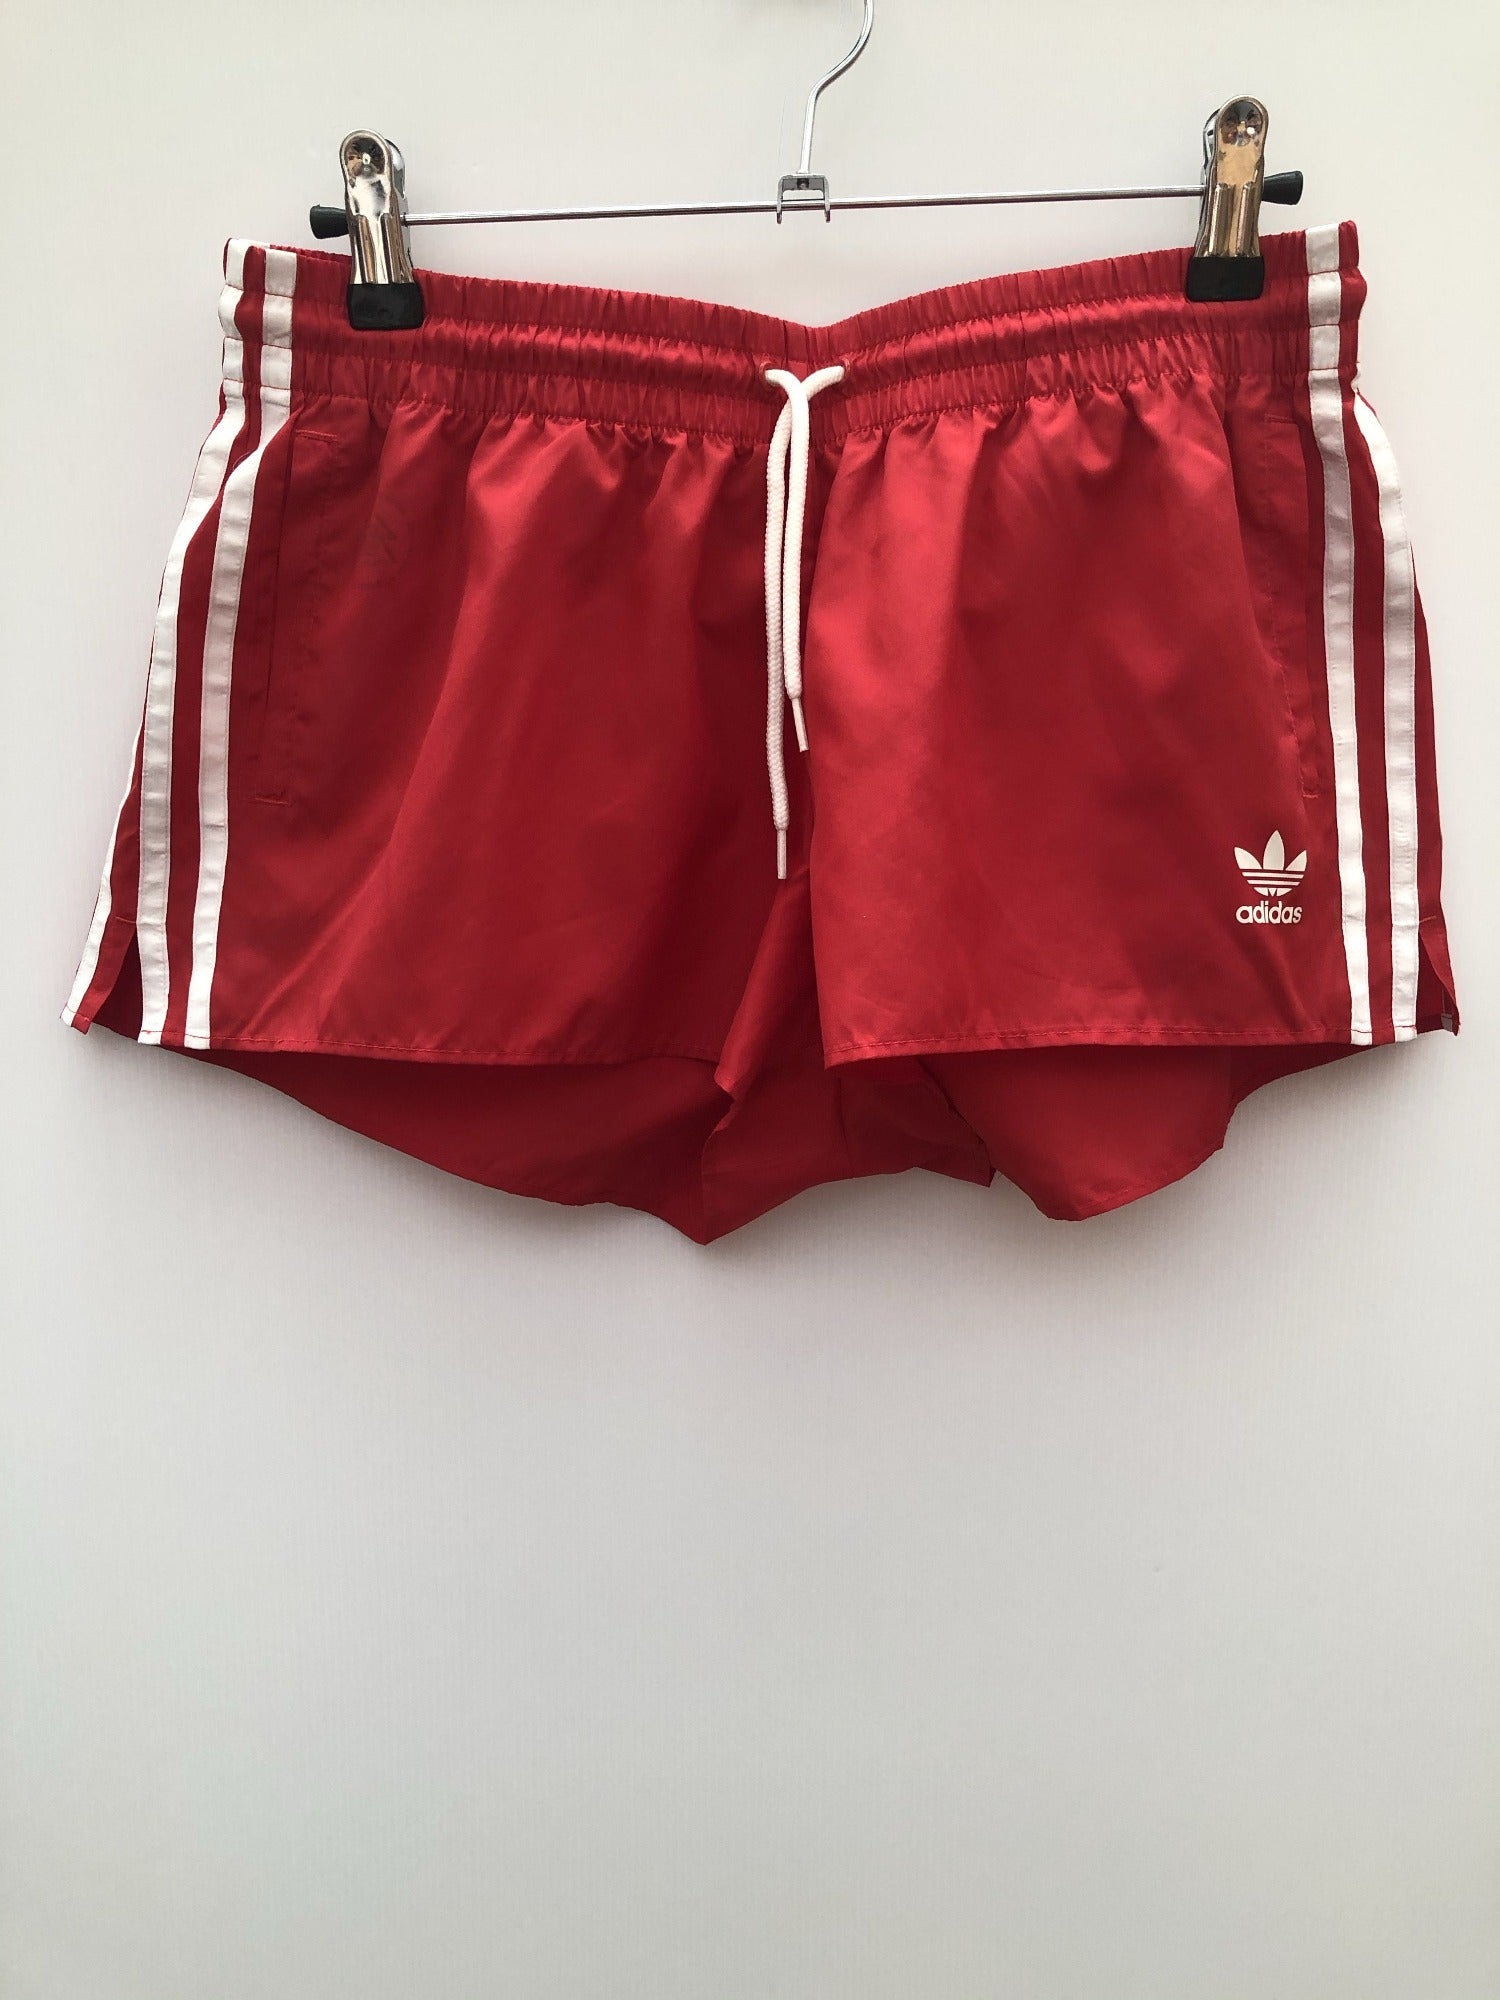 Retro Adidas Sportswear Training Shorts in red - Size 6-8 - Urban